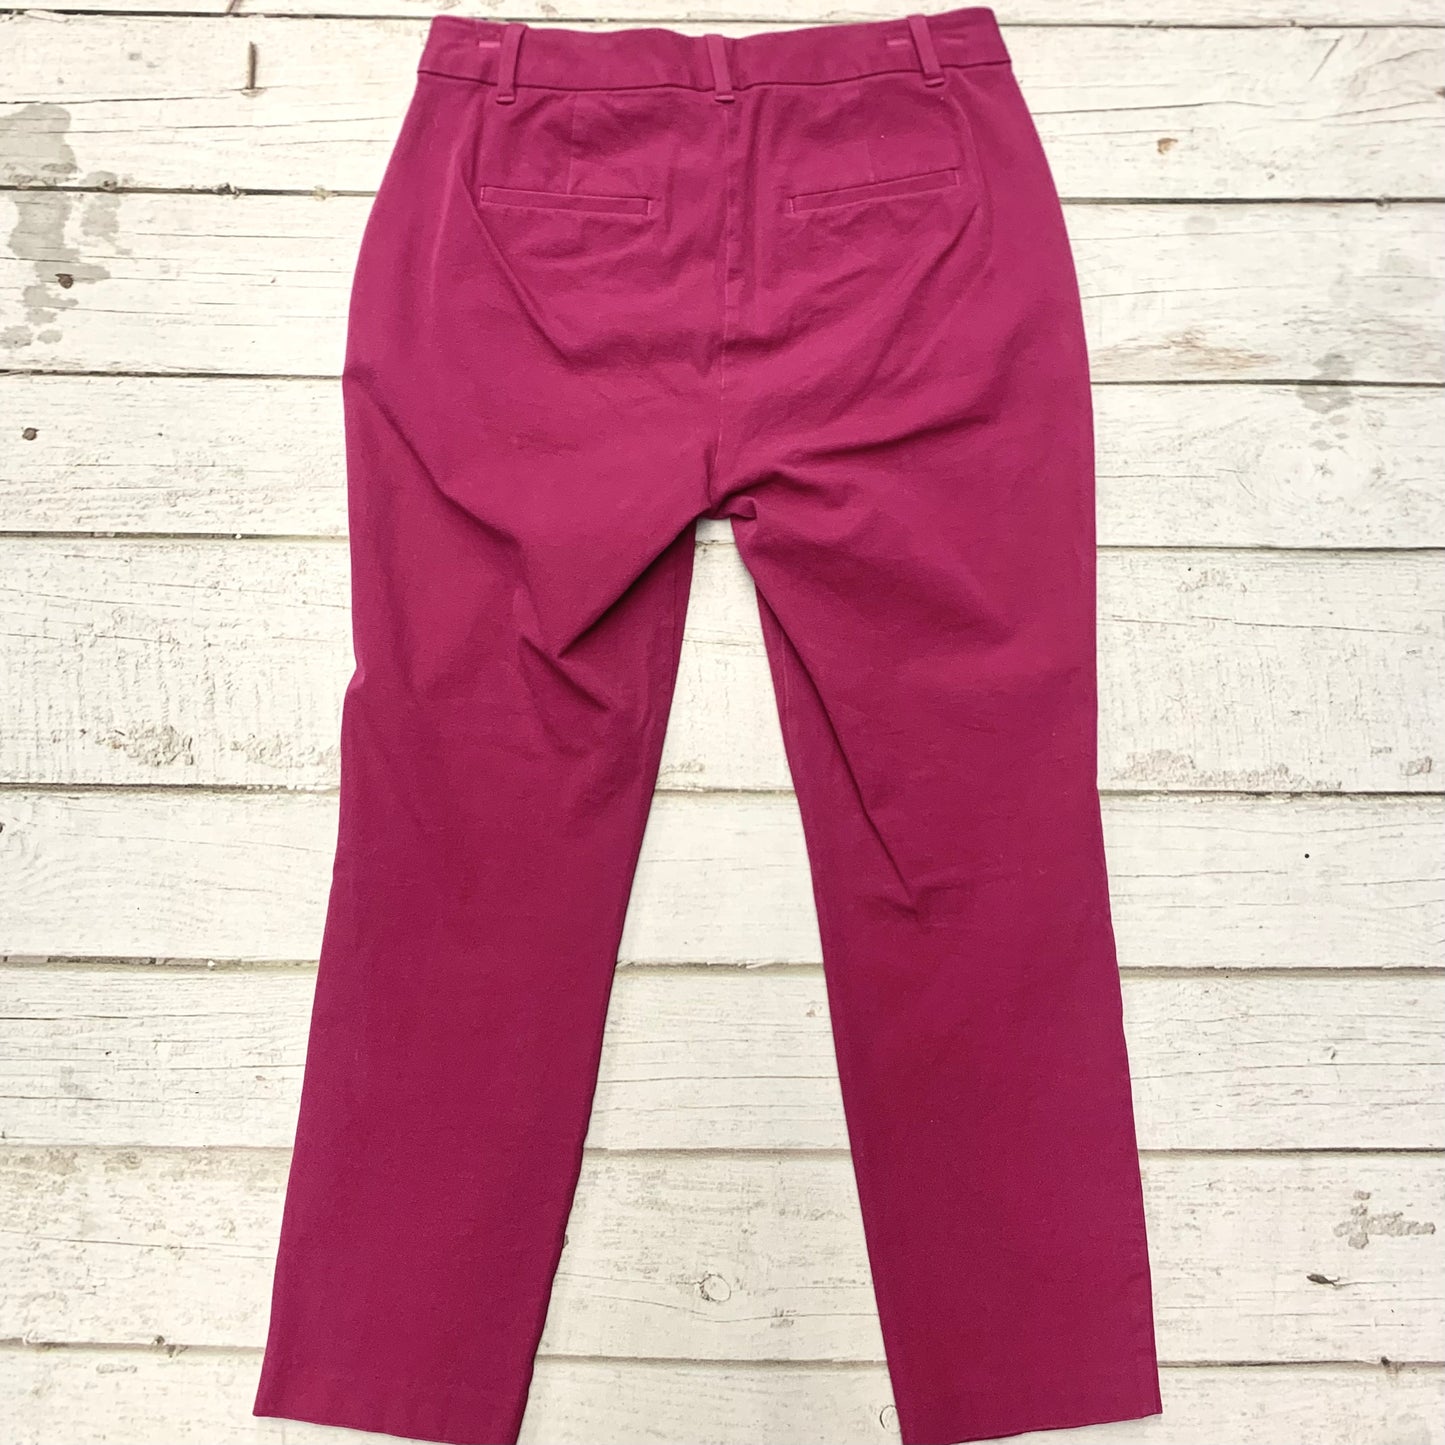 Pants Work/dress By Gap  Size: 10